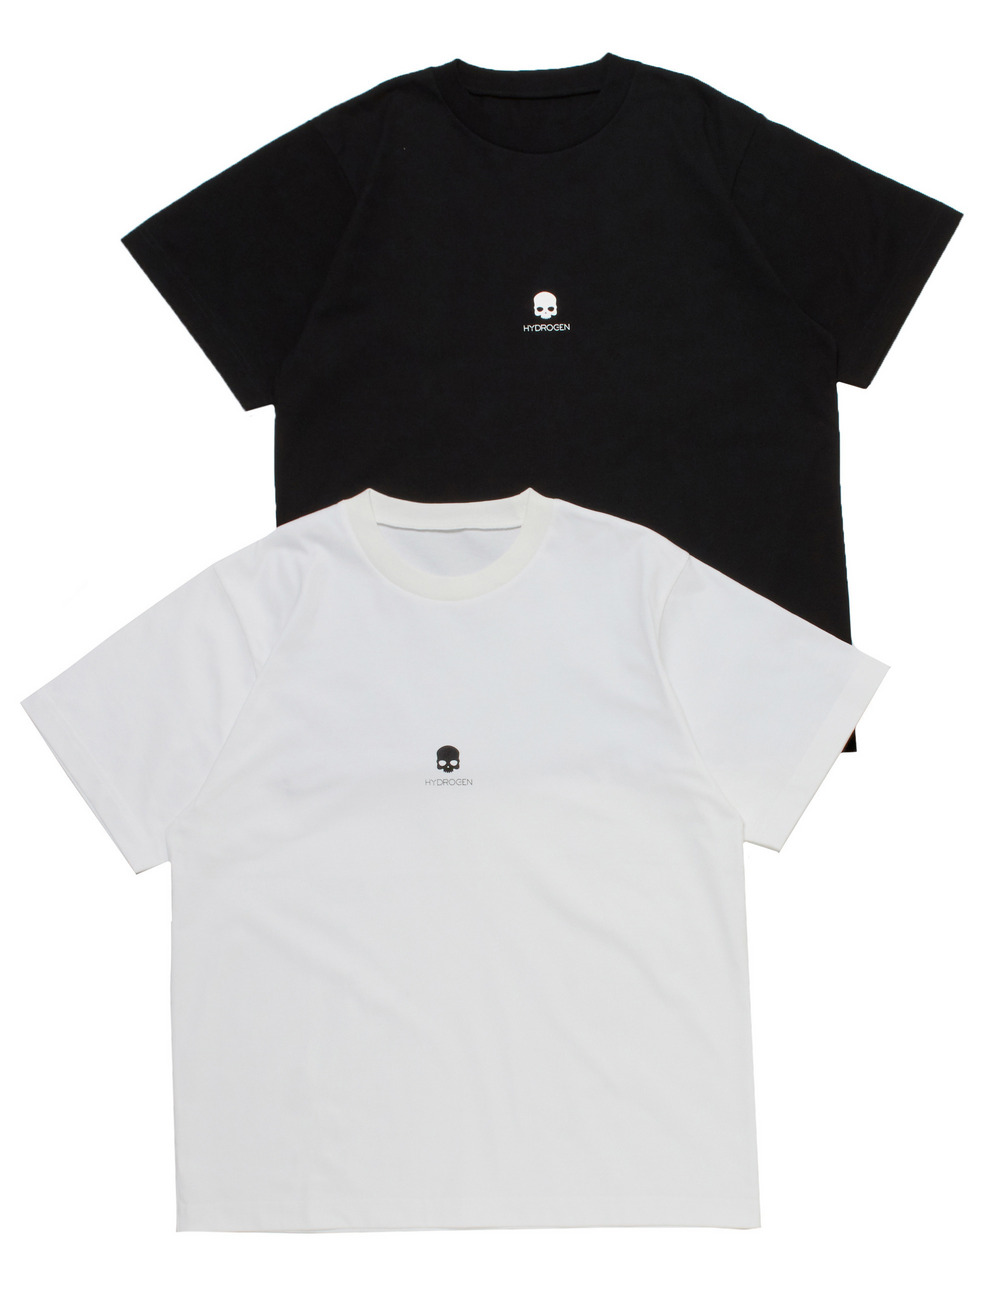 【オンライン限定】パックTシャツ(2枚組)/【ONLINE LIMITED】PACK TEE(2PCS) 詳細画像 ホワイトブラック 1